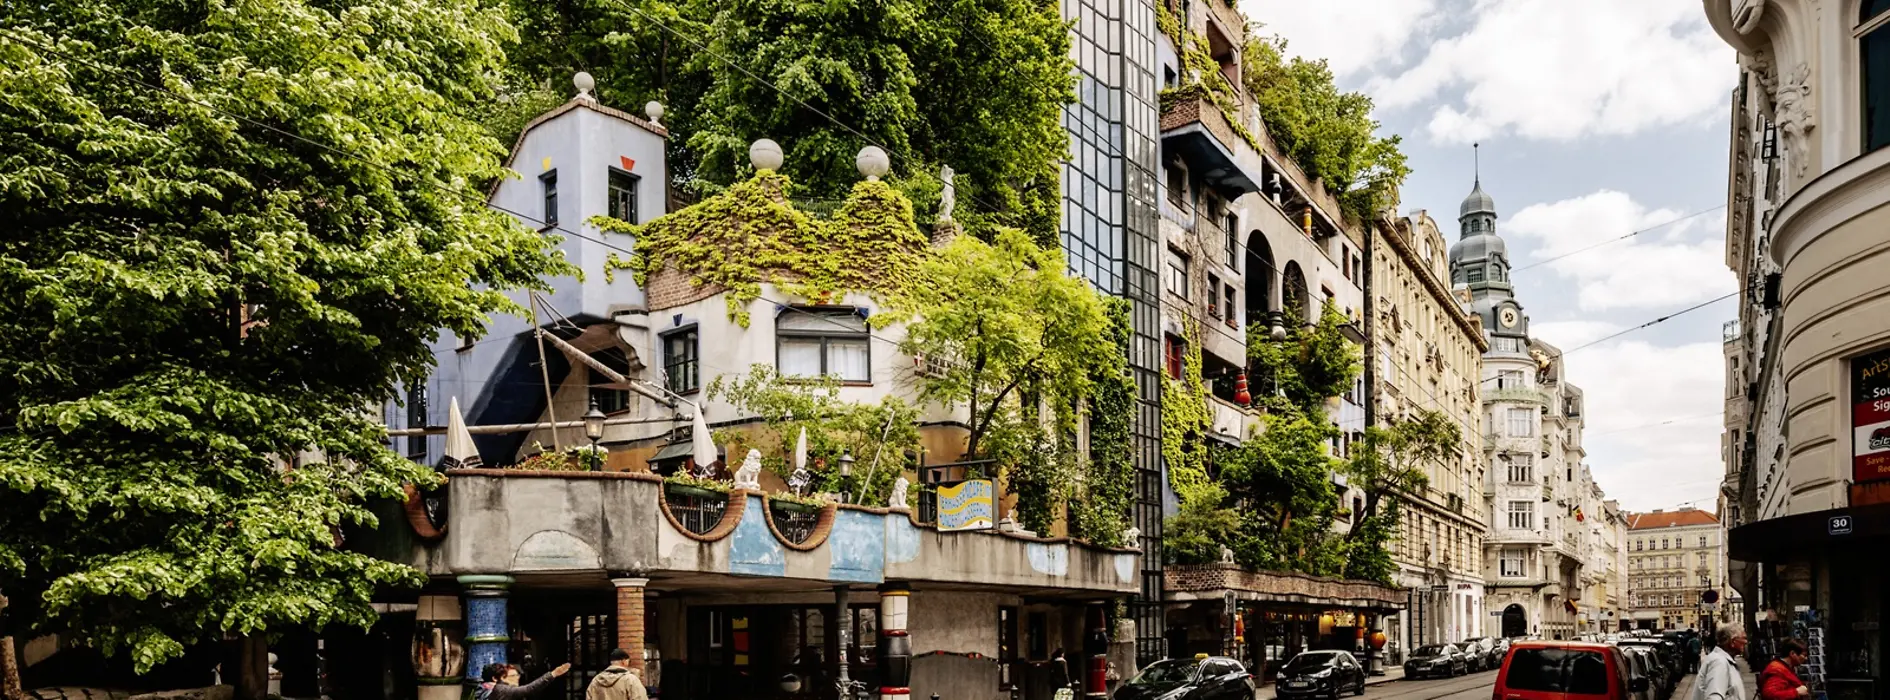 Hundertwasserhaus: el edificio residencial más bonito de Viena 